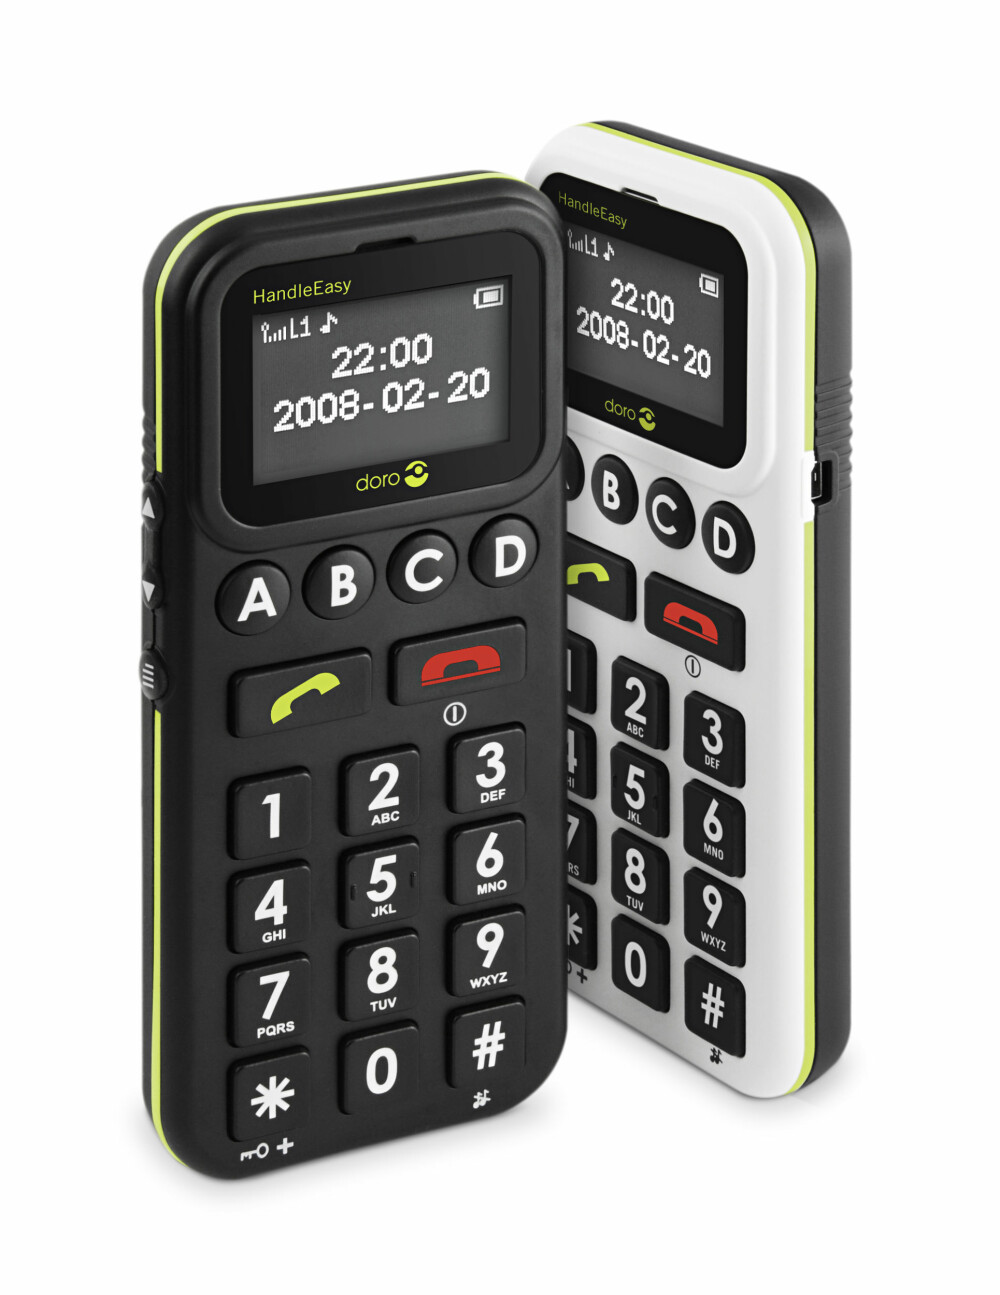 Seniortelefon med mulighet for å motta SMS. Doro HandleEasy 328gsm.